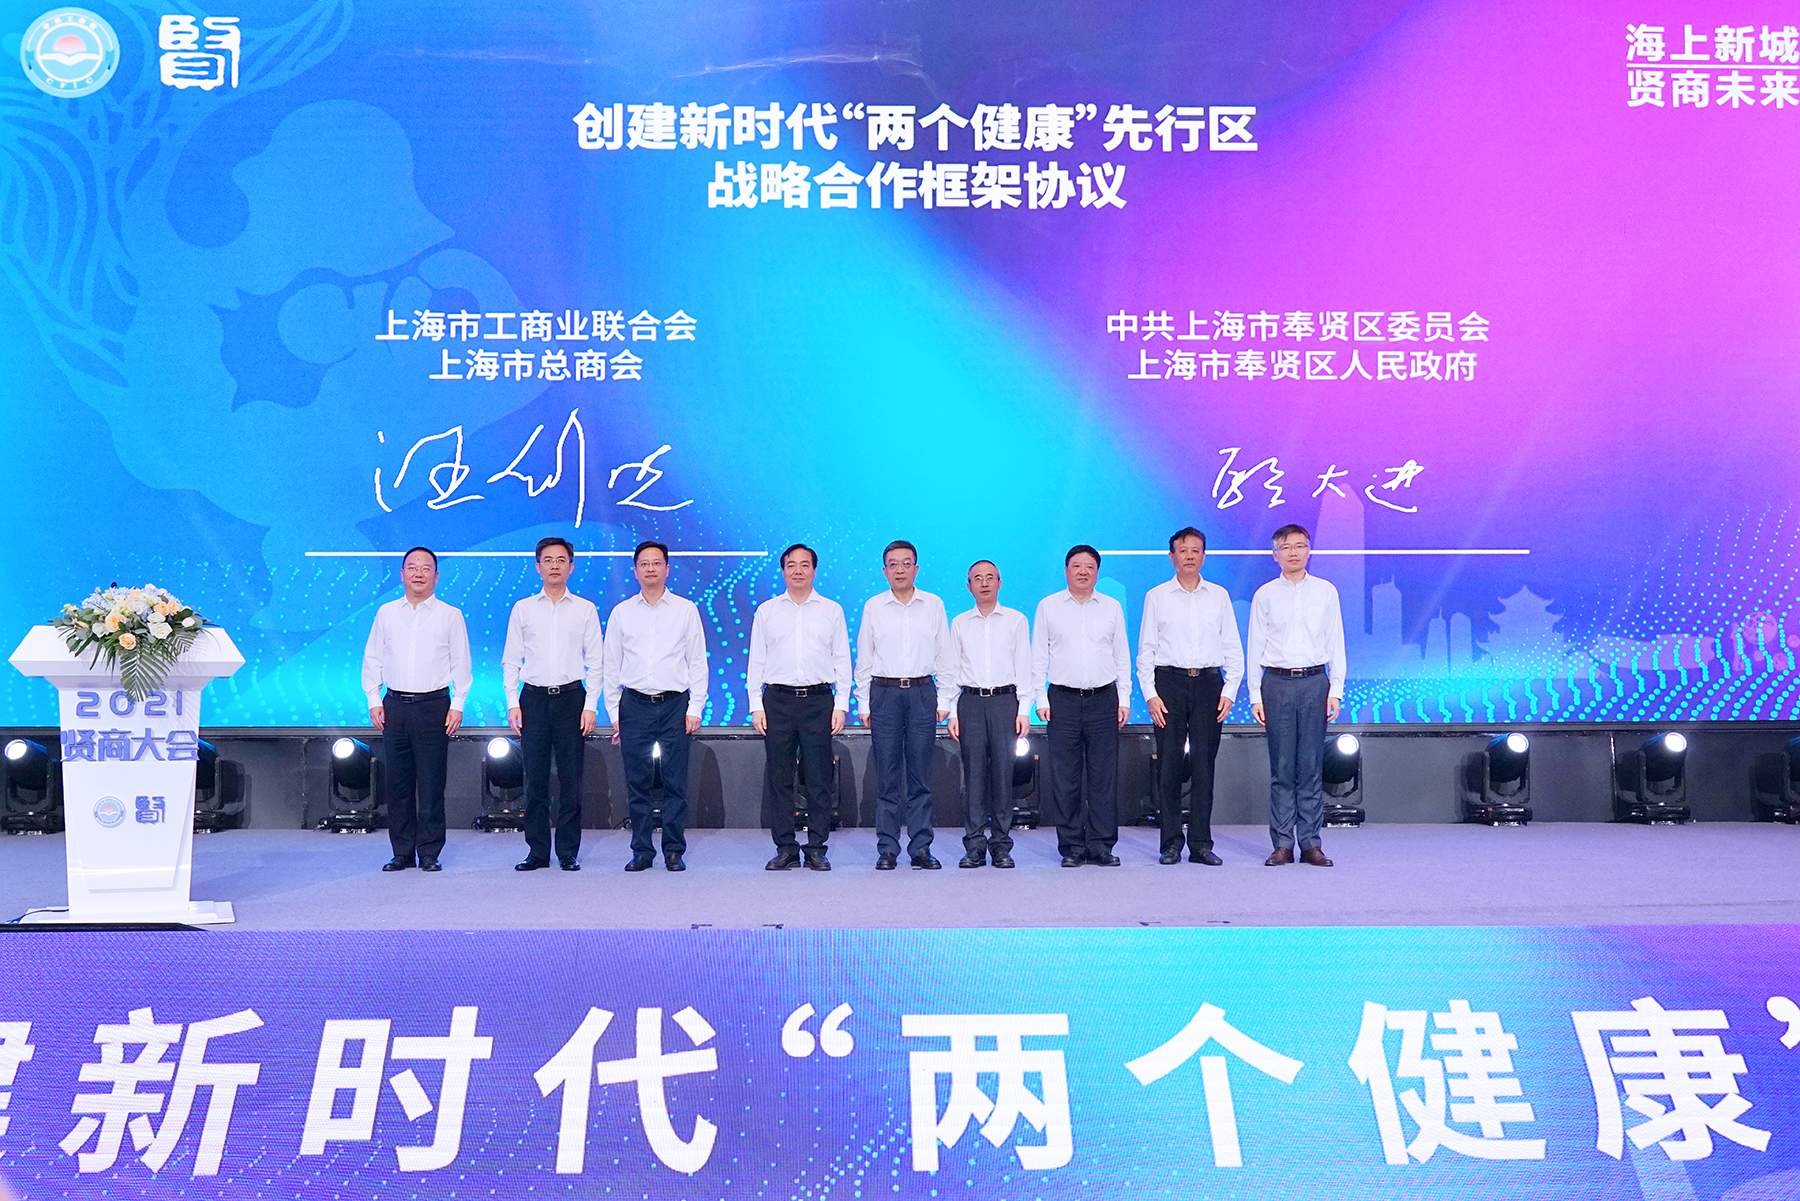 上海市工商联、上海市总商会与中共奉贤区委、奉贤区人民政府签订创建新时代“两个健康”先行区战略合作框架